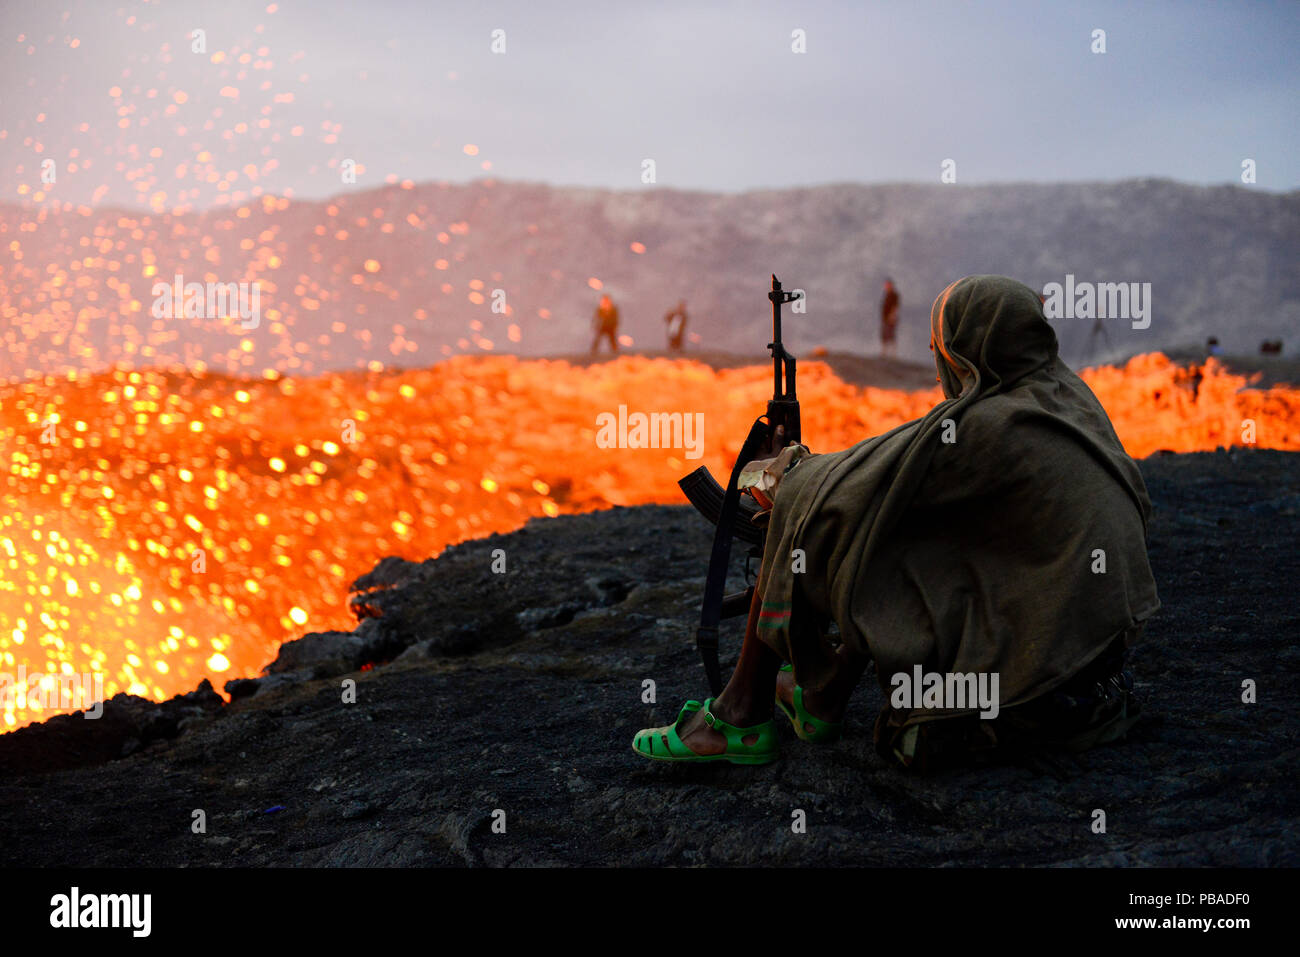 Un soldat armé d'Erta Ale activité cratère de volcan à l'aube. La région Afar, en Ethiopie, l'Afrique. Novembre 2014. Novembre 2014. Banque D'Images